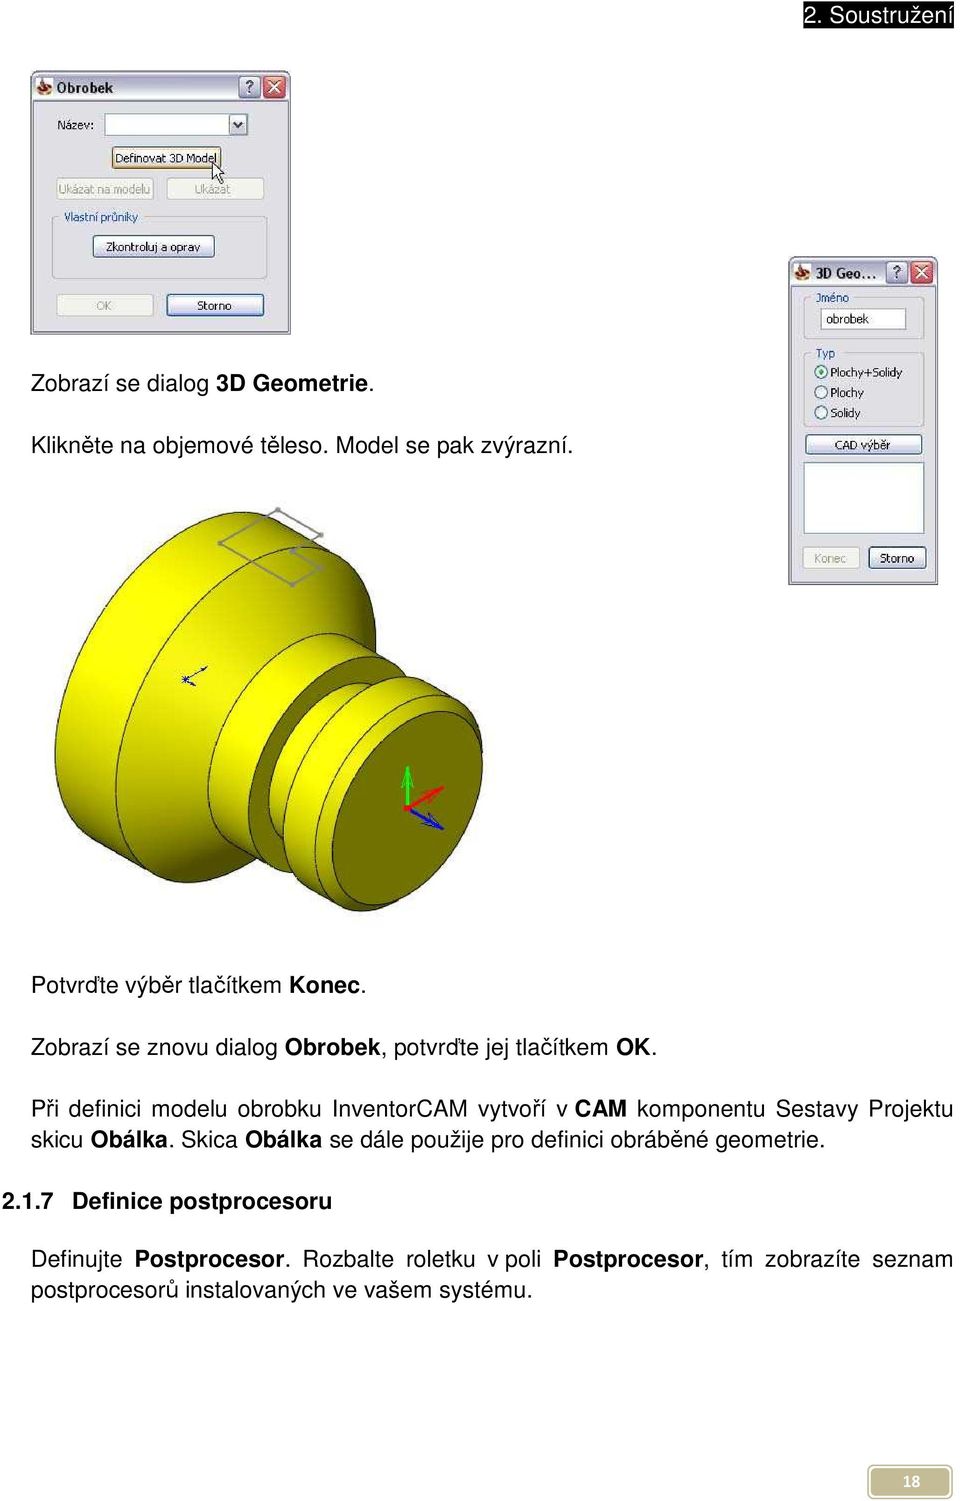 Při definici modelu obrobku InventorCAM vytvoří v CAM komponentu Sestavy Projektu skicu Obálka.